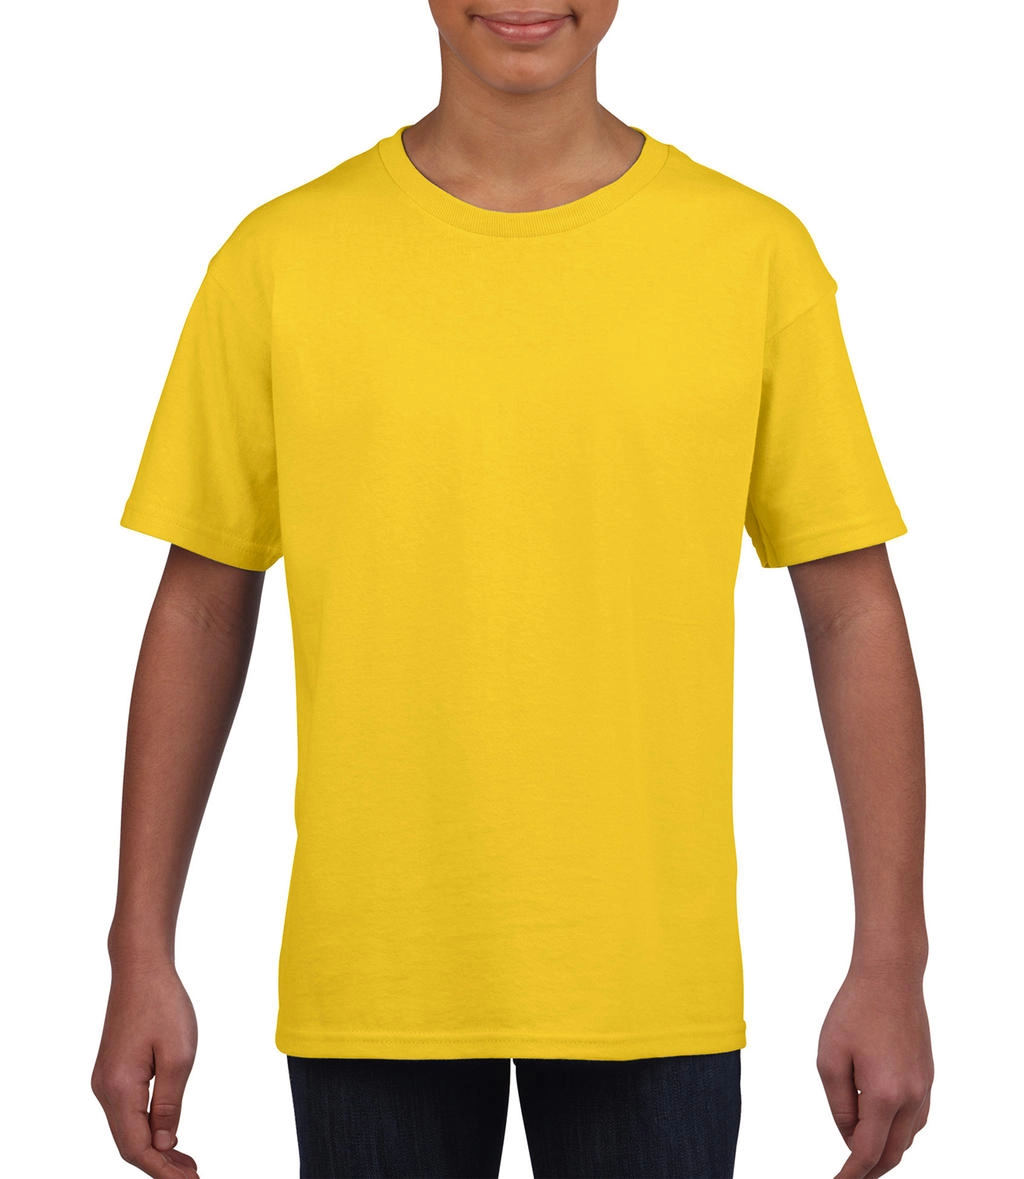 Softstyle® Youth T-Shirt zum Besticken und Bedrucken in der Farbe Daisy mit Ihren Logo, Schriftzug oder Motiv.